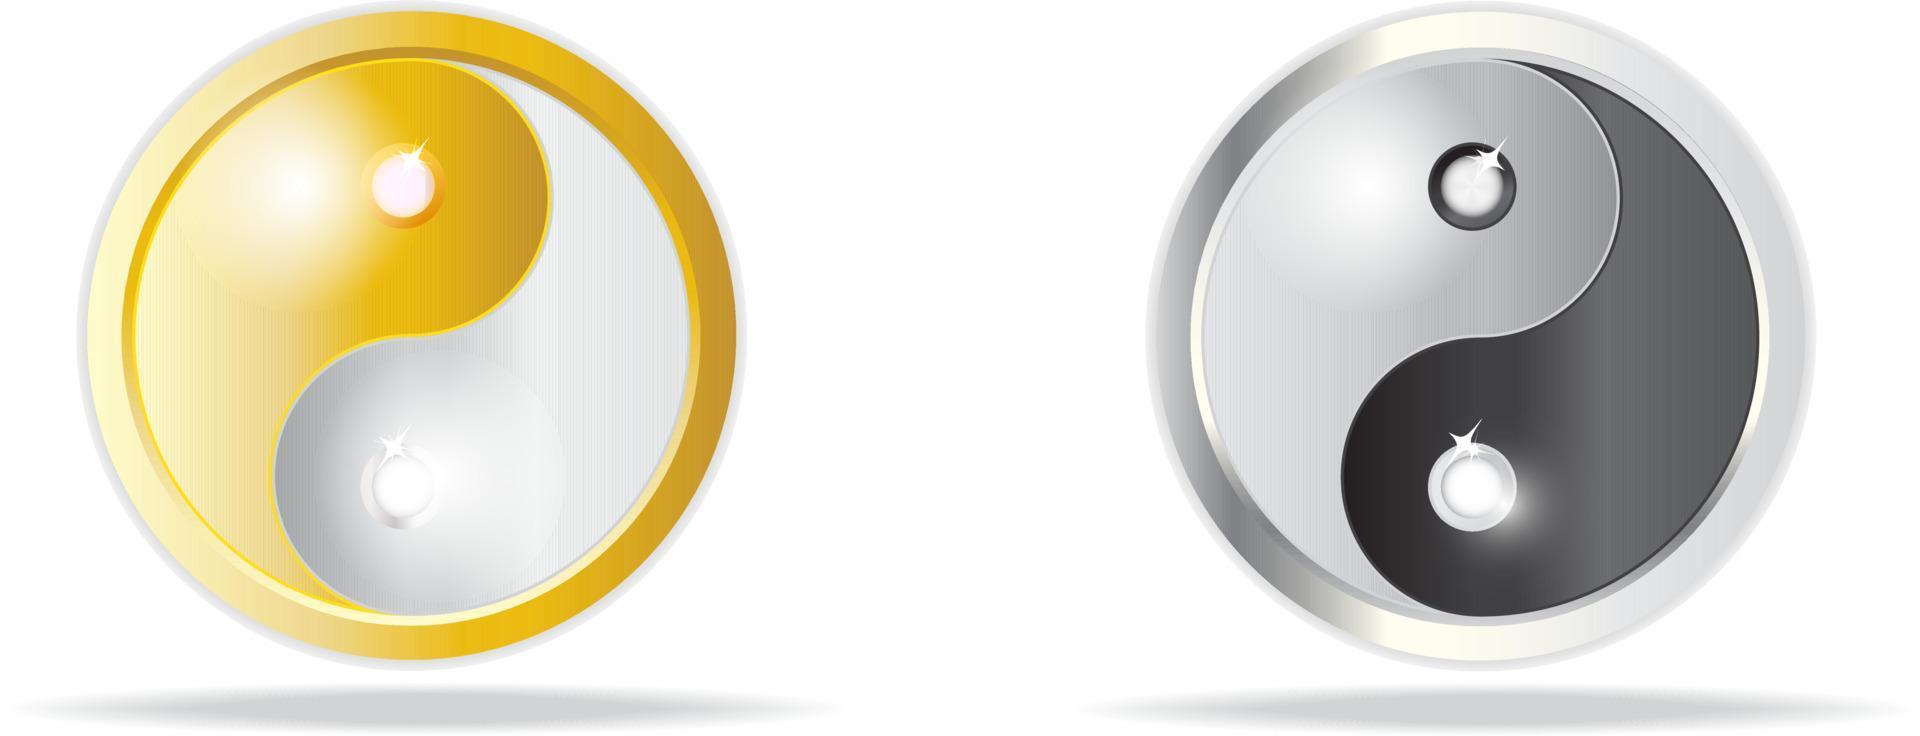 Yin-Yang-Symbol in zwei Farben schwarz und gold vektor